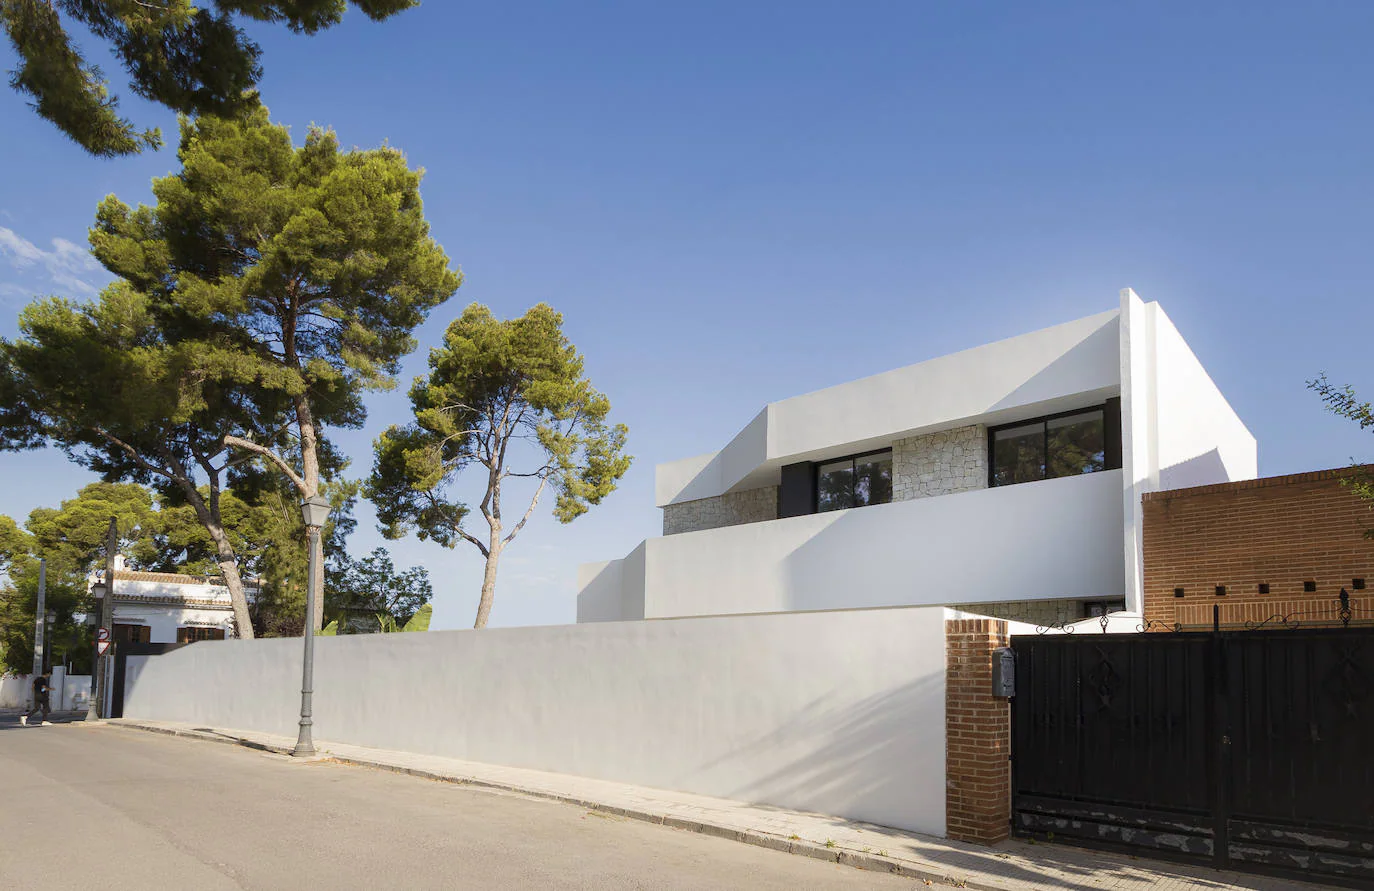 Fotos: Teoina, la casa valenciana que se ha convertido en un referente de estilo